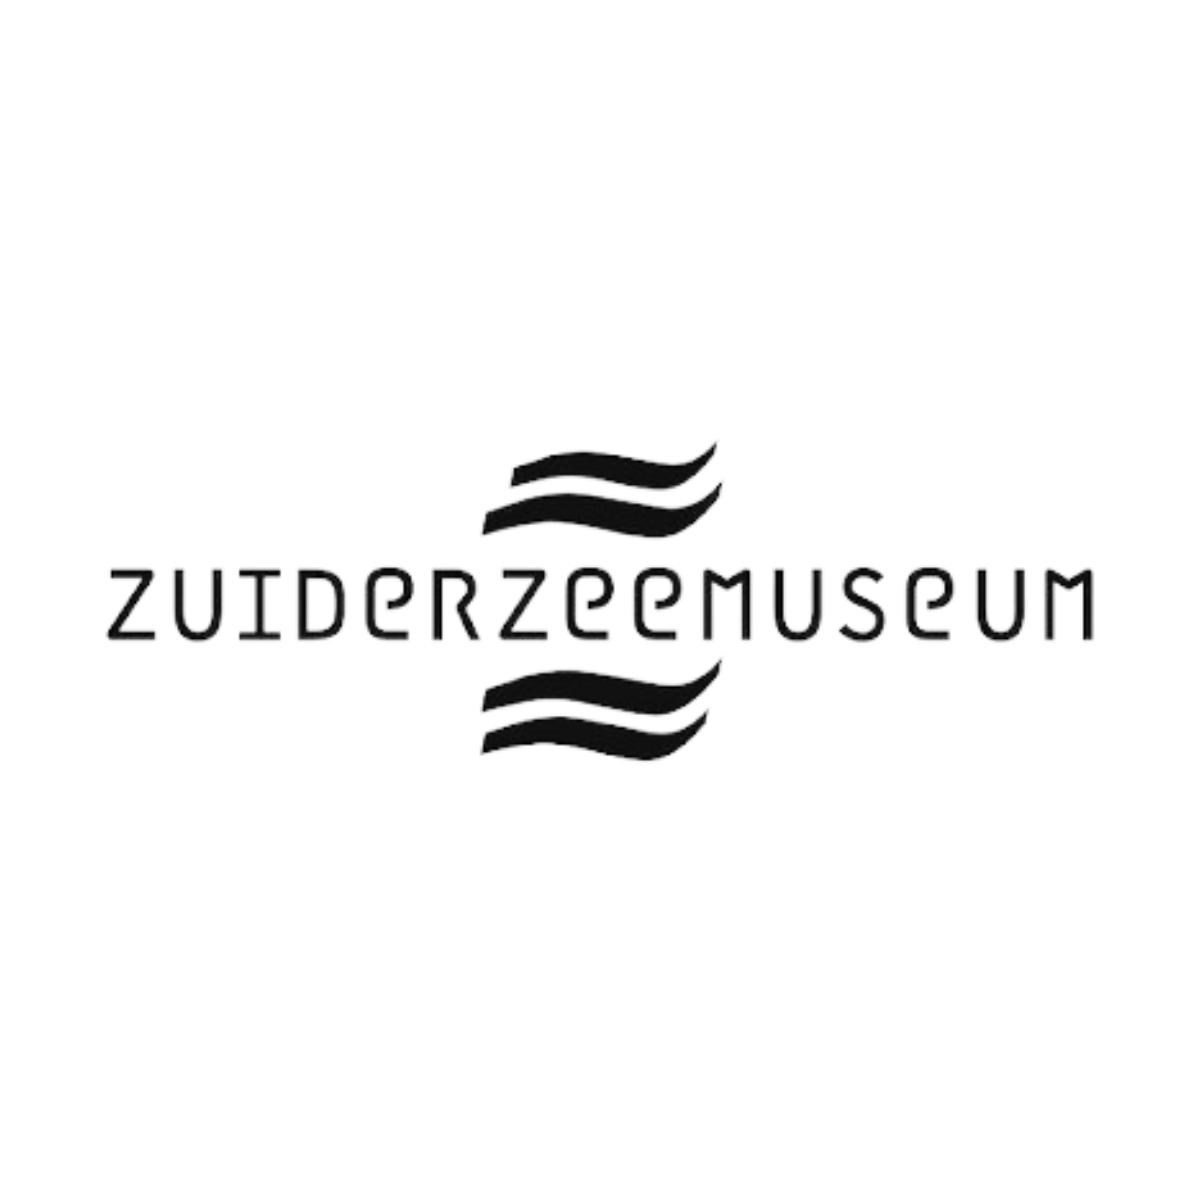 Musea - Zuiderzee Museum